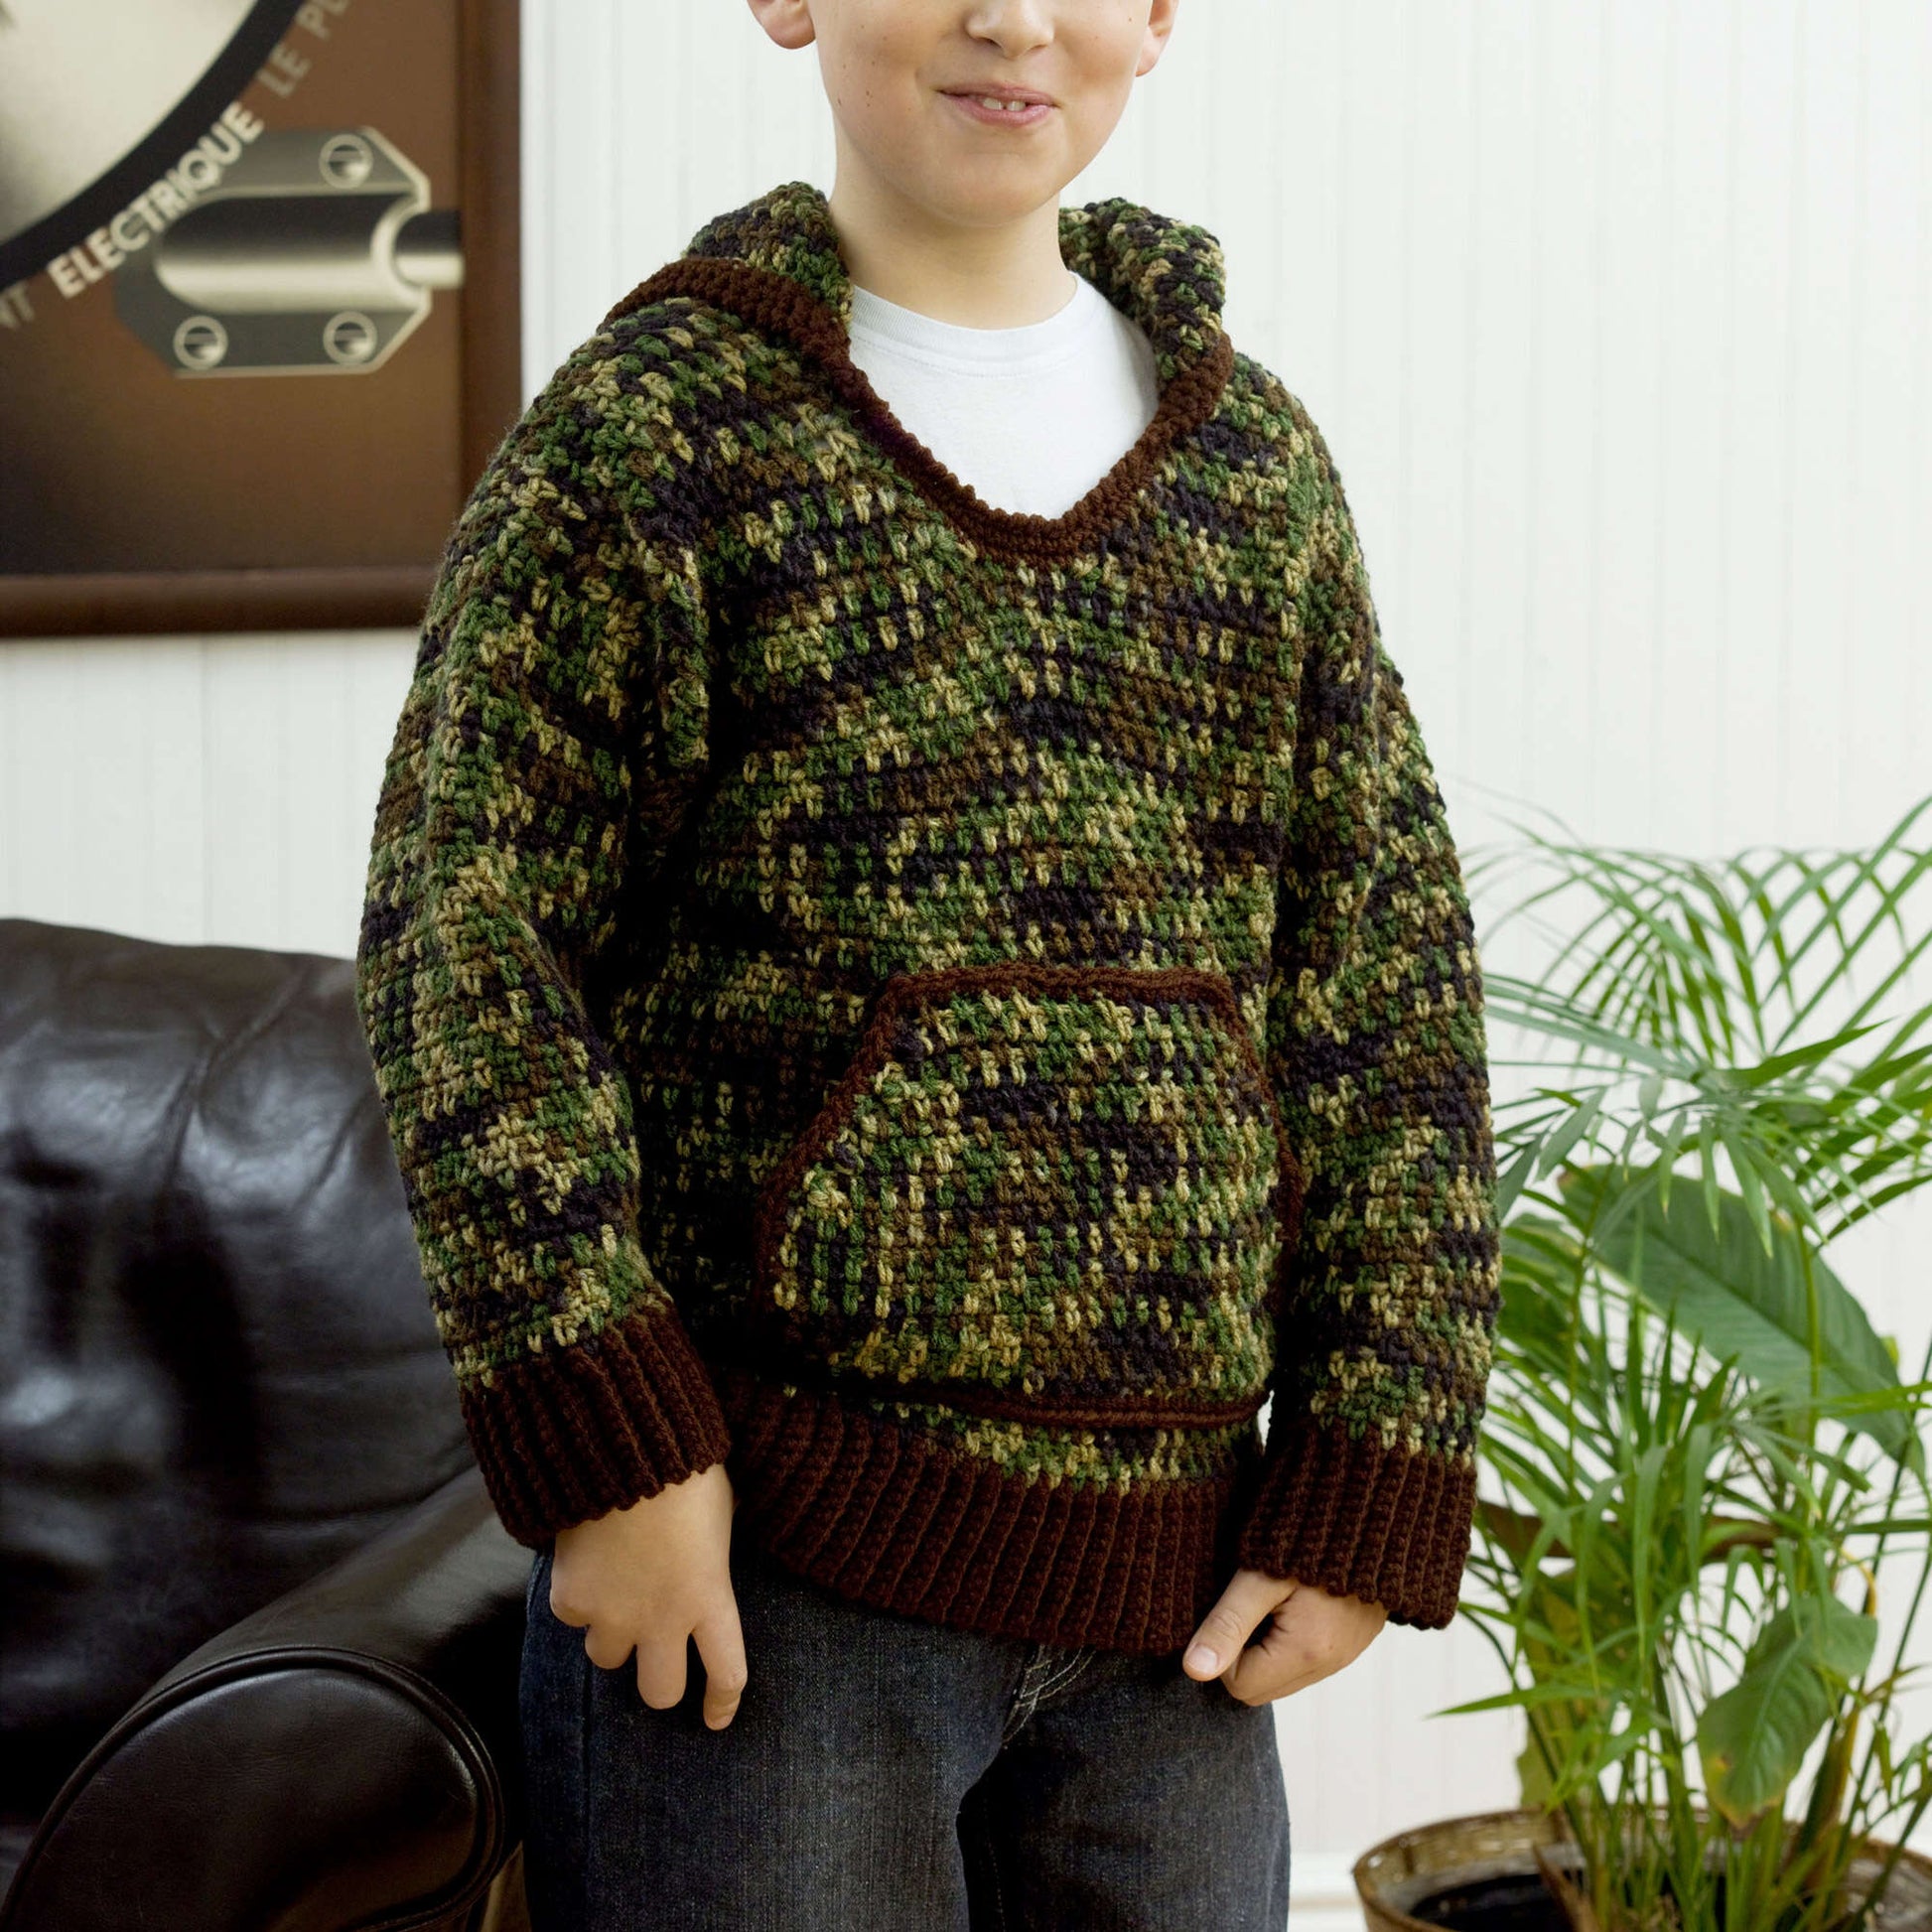 Free Red Heart Crochet Kid's Hooded Sweatshirt Pattern